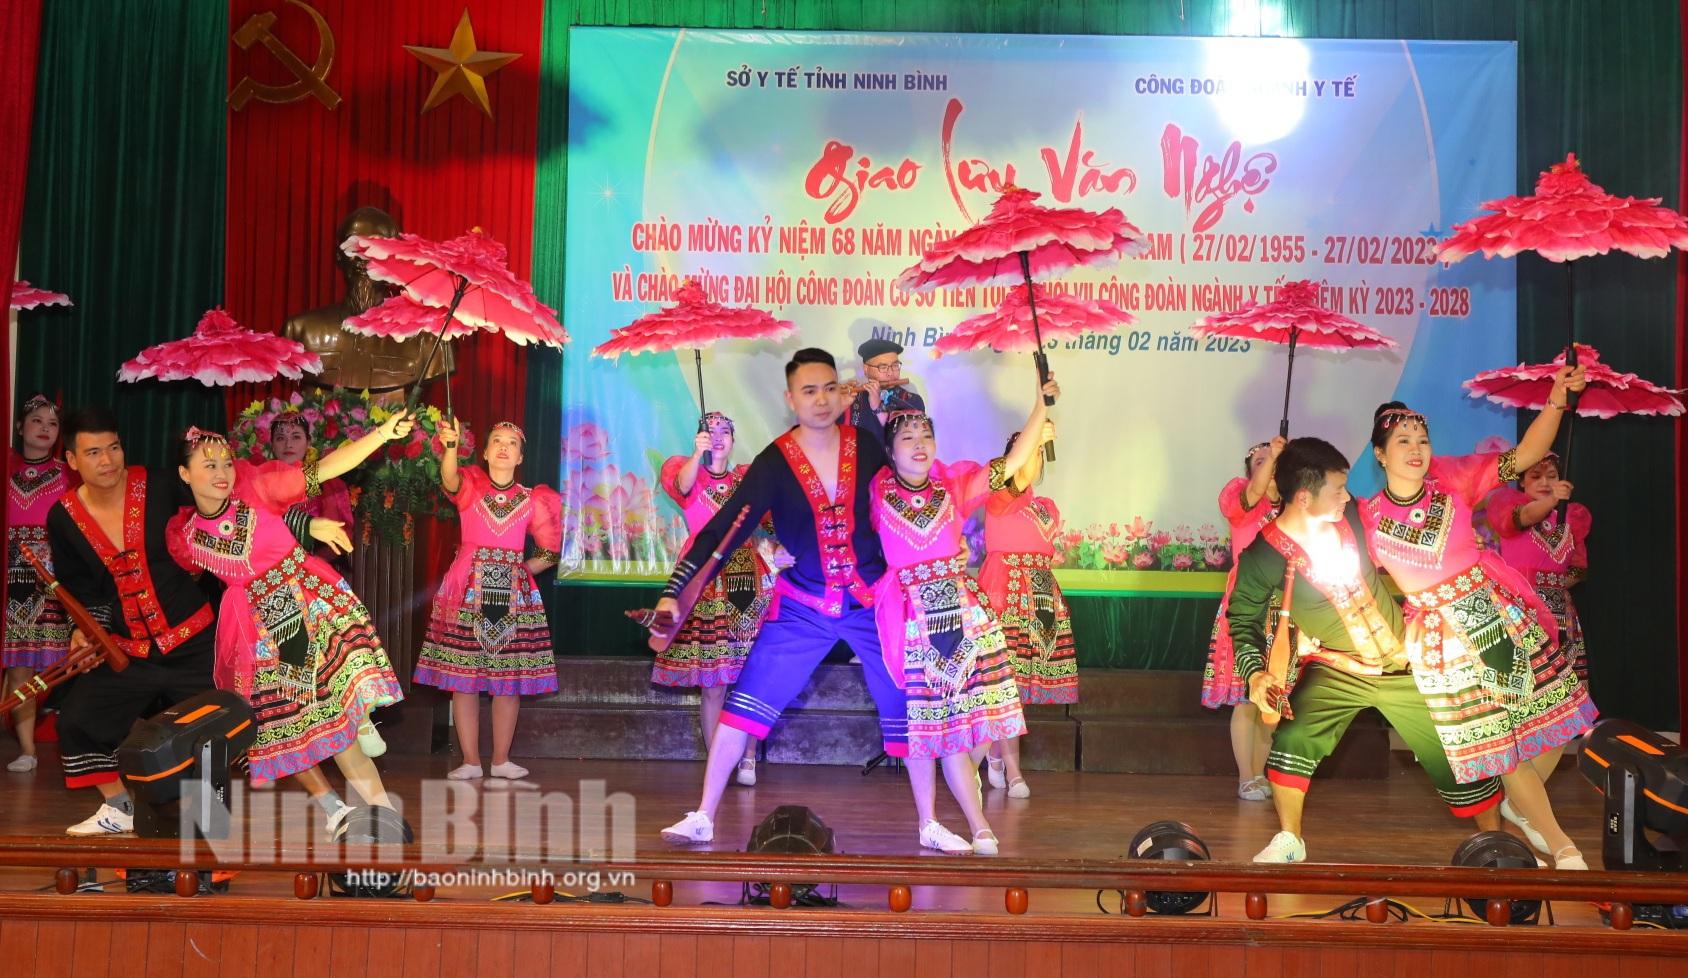 Giao lưu văn nghệ chào mừng kỷ niệm 68 năm ngày Thầy thuốc Việt Nam